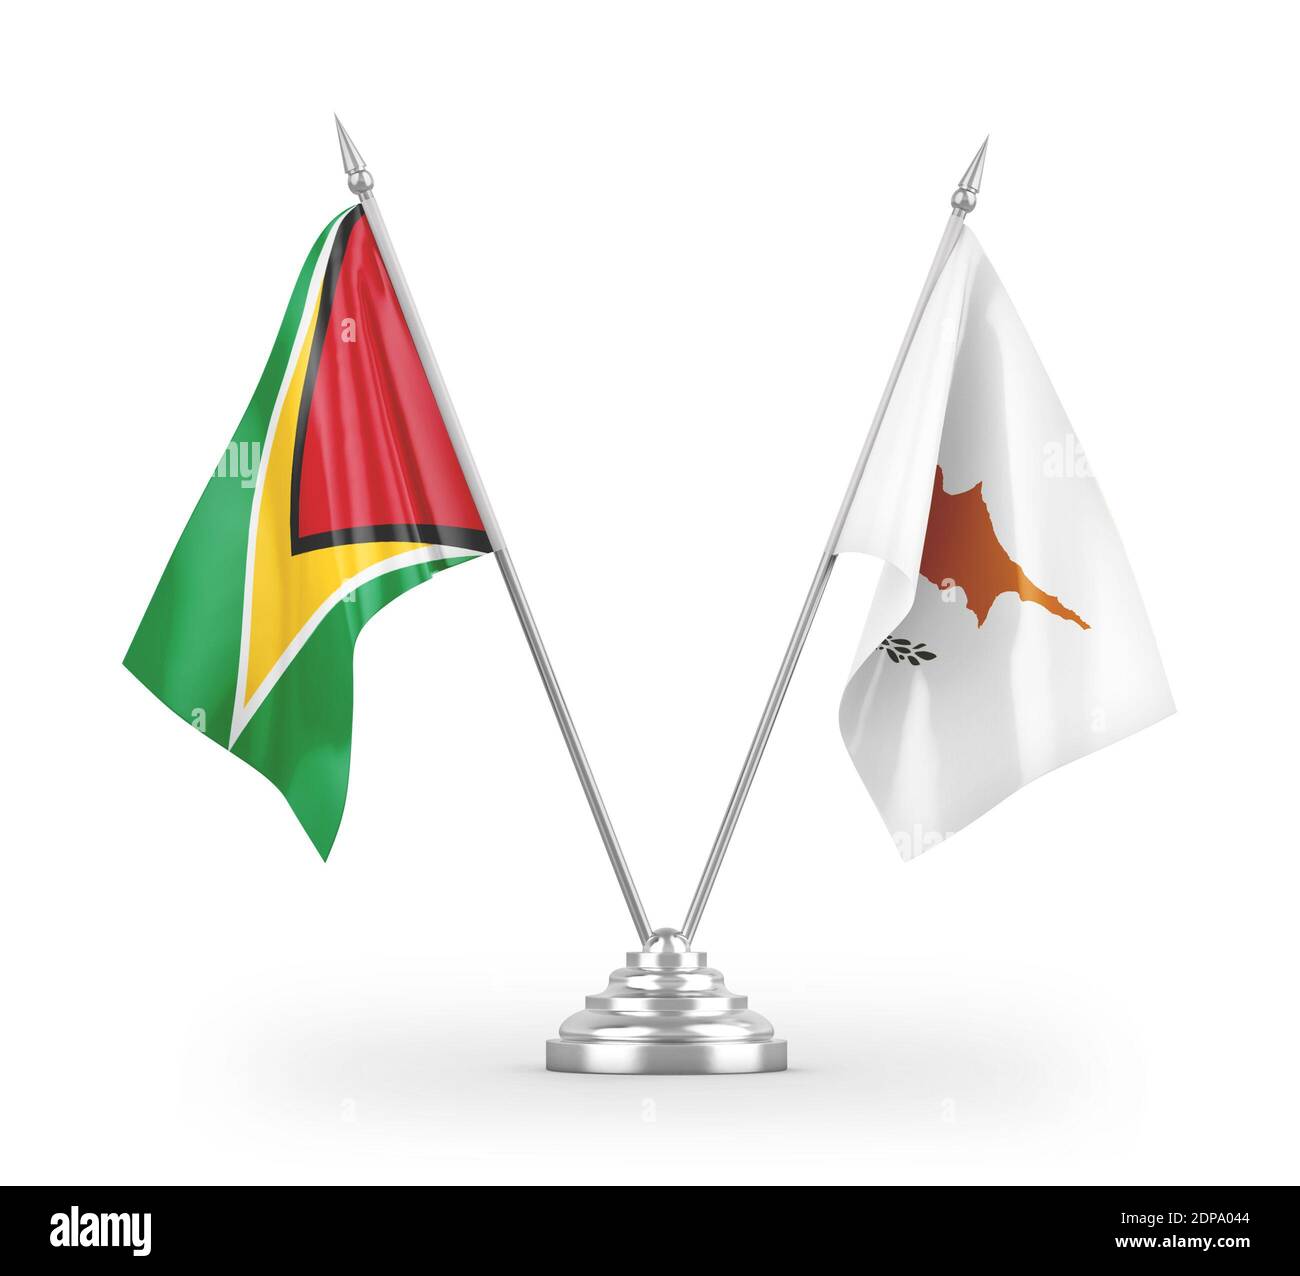 Zypern und Guyana Tischflags isoliert auf weißem 3D-Rendering Stockfoto